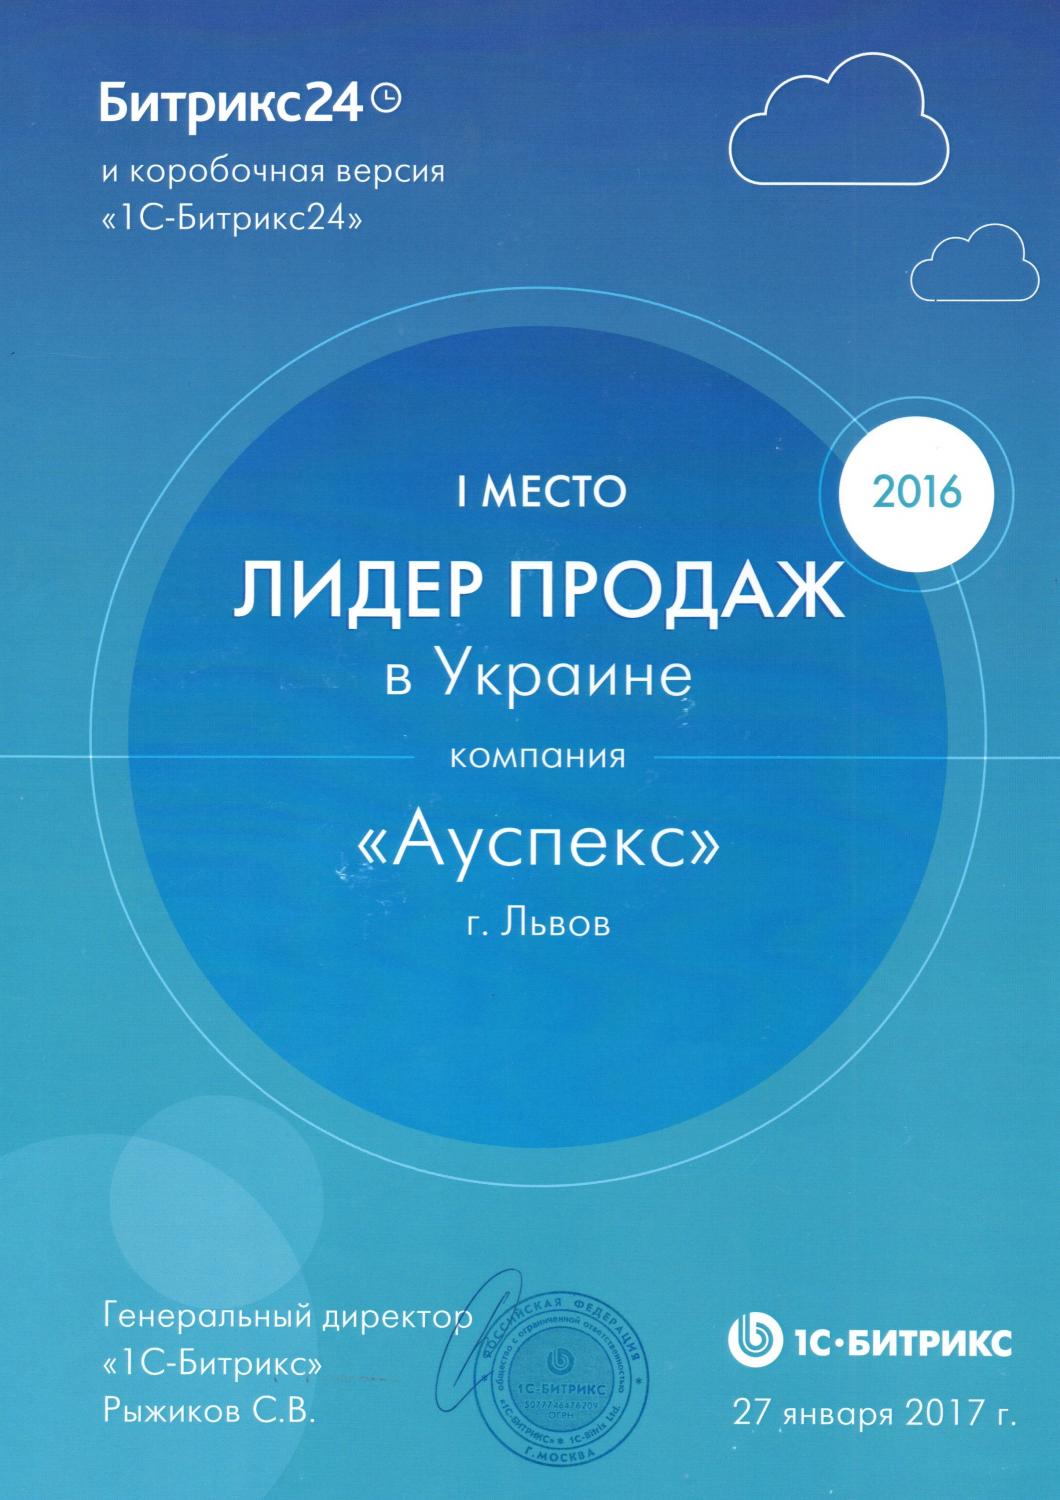 Сертифікат "1 місце в Україні"